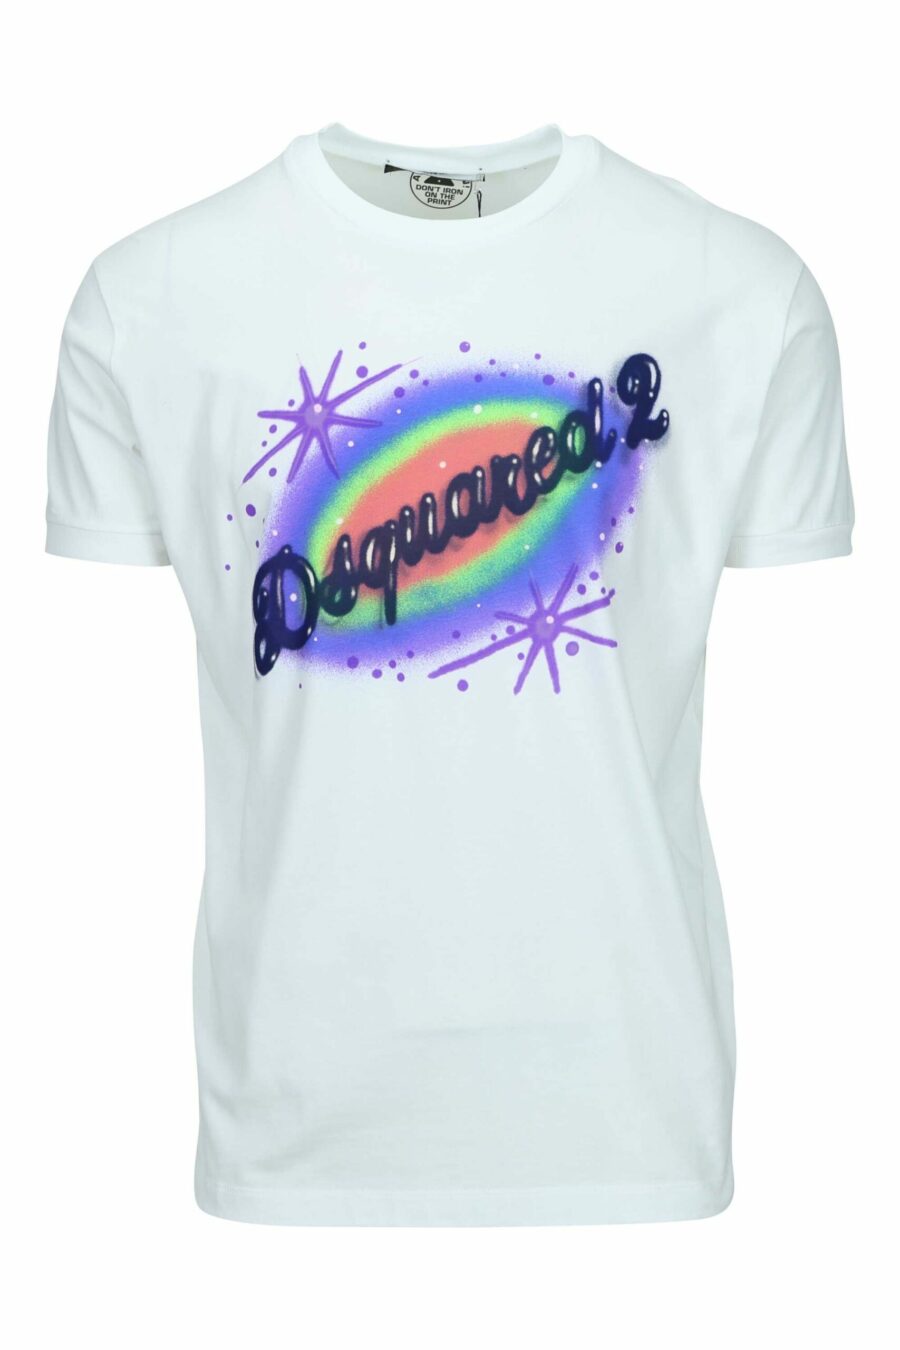 Camiseta blanca con maxilogo multicolor graffiti - 8054148570620 scaled